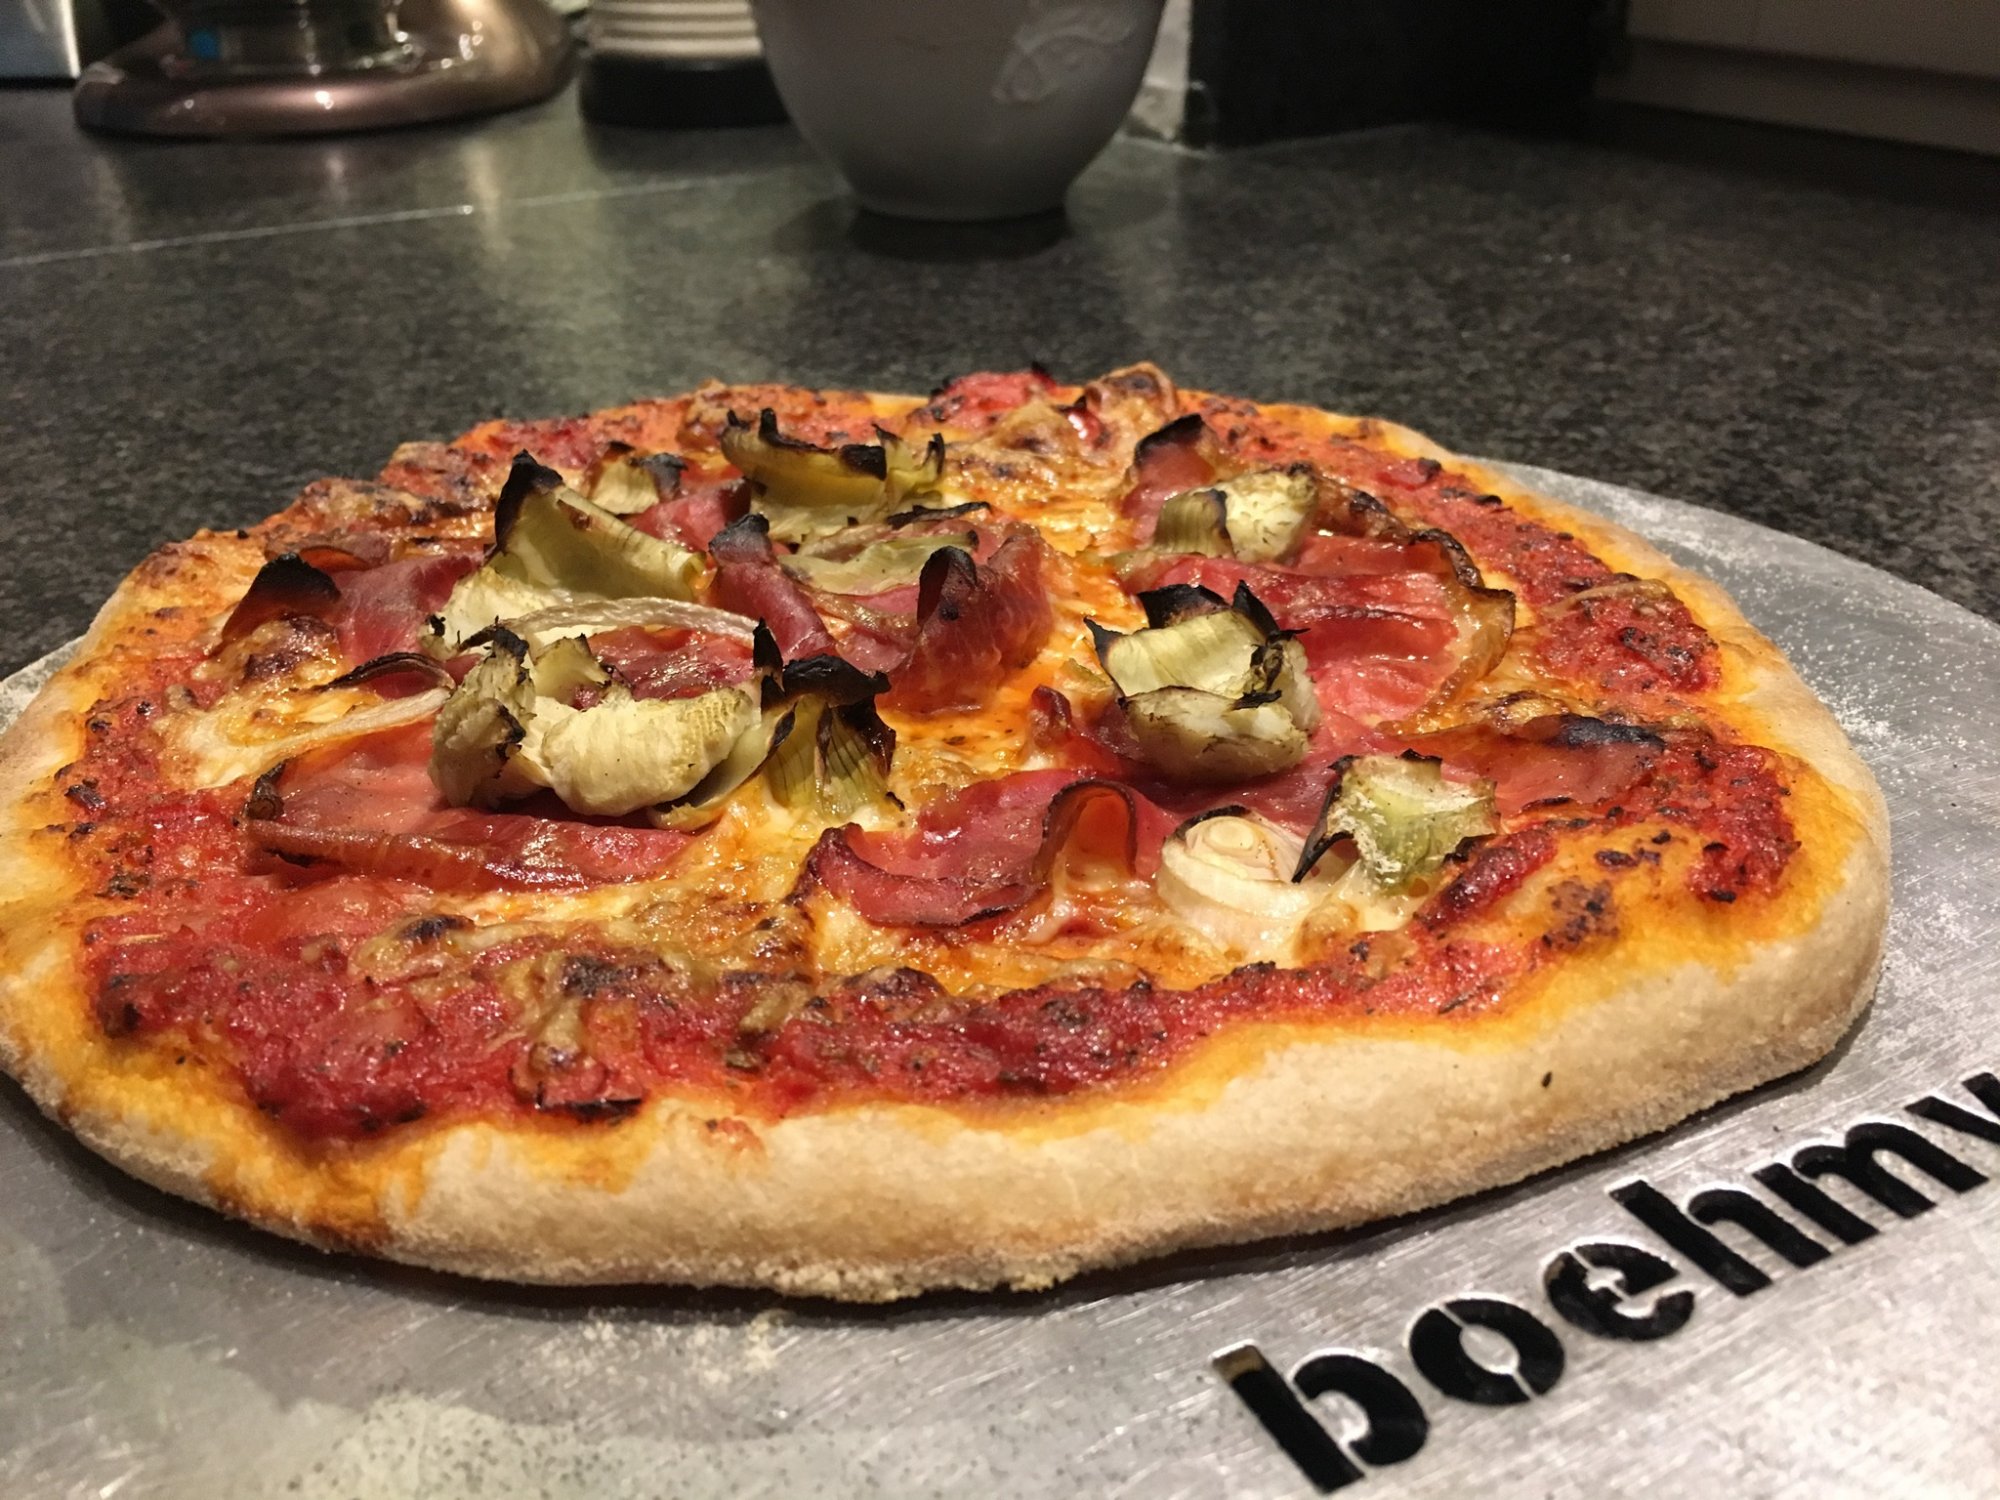 Romantische Pizza verramsterung im dunkeln | Grillforum und BBQ - www ...